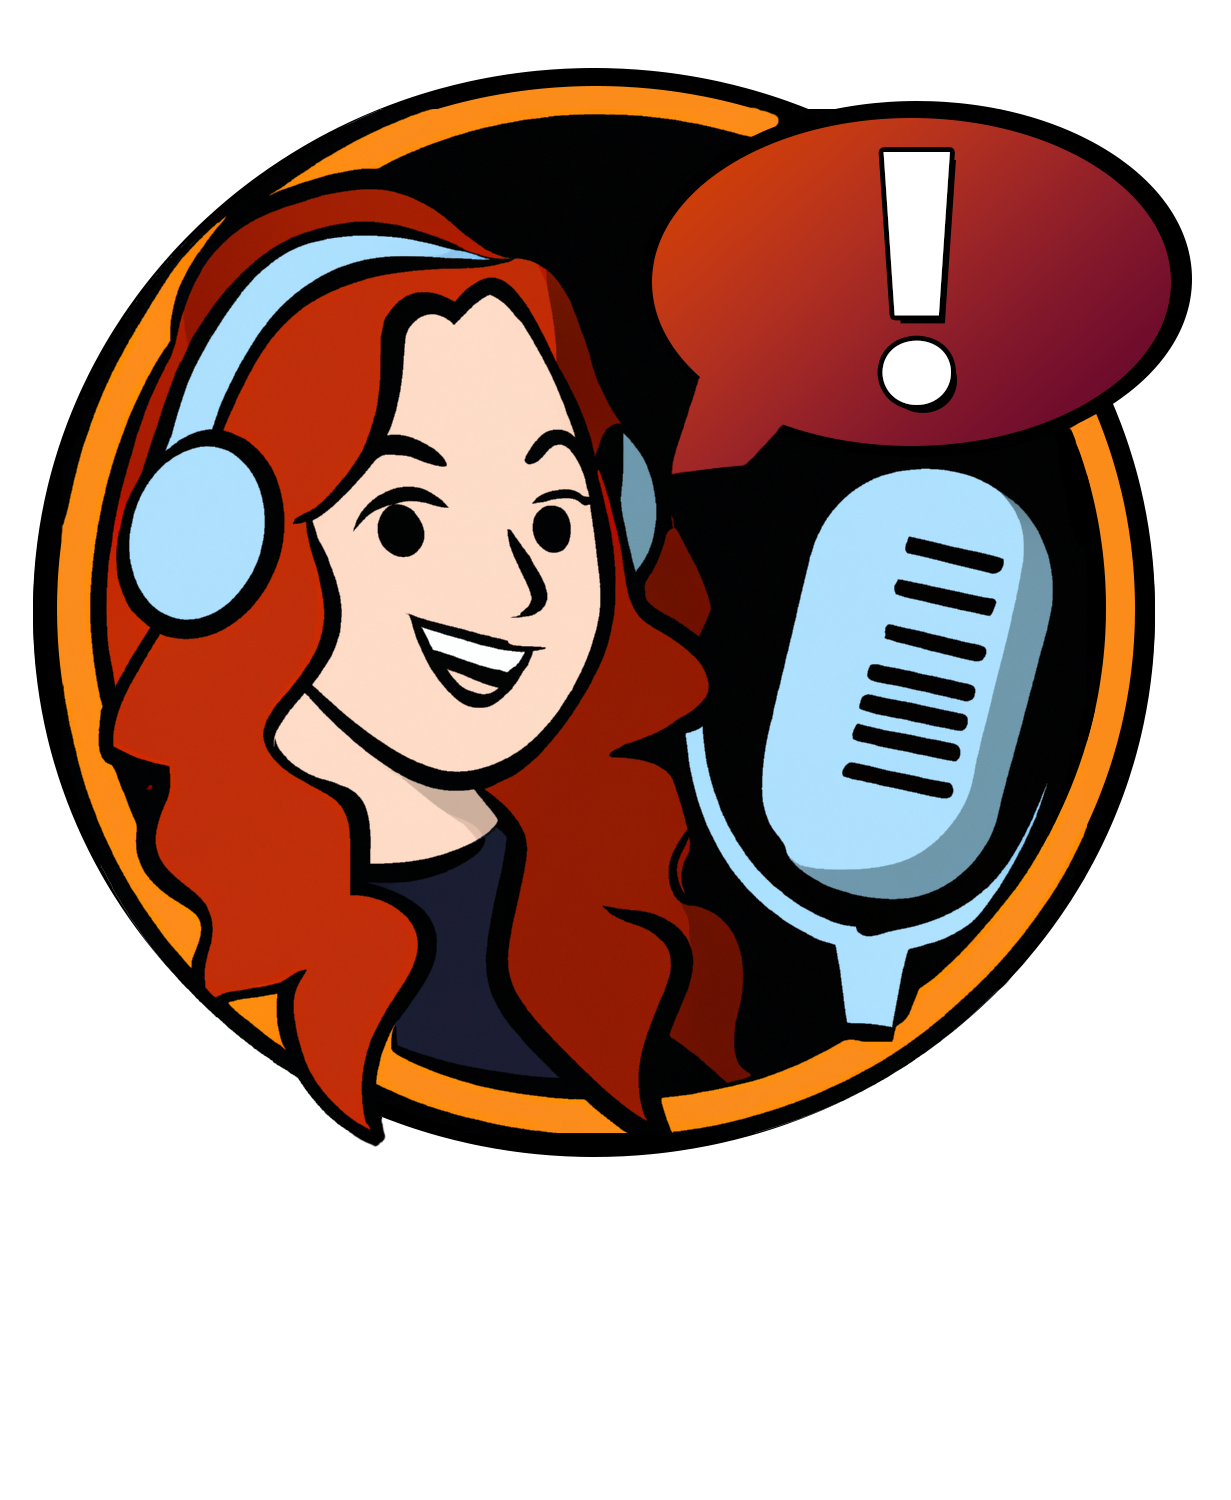 Charlynn Schmiedt